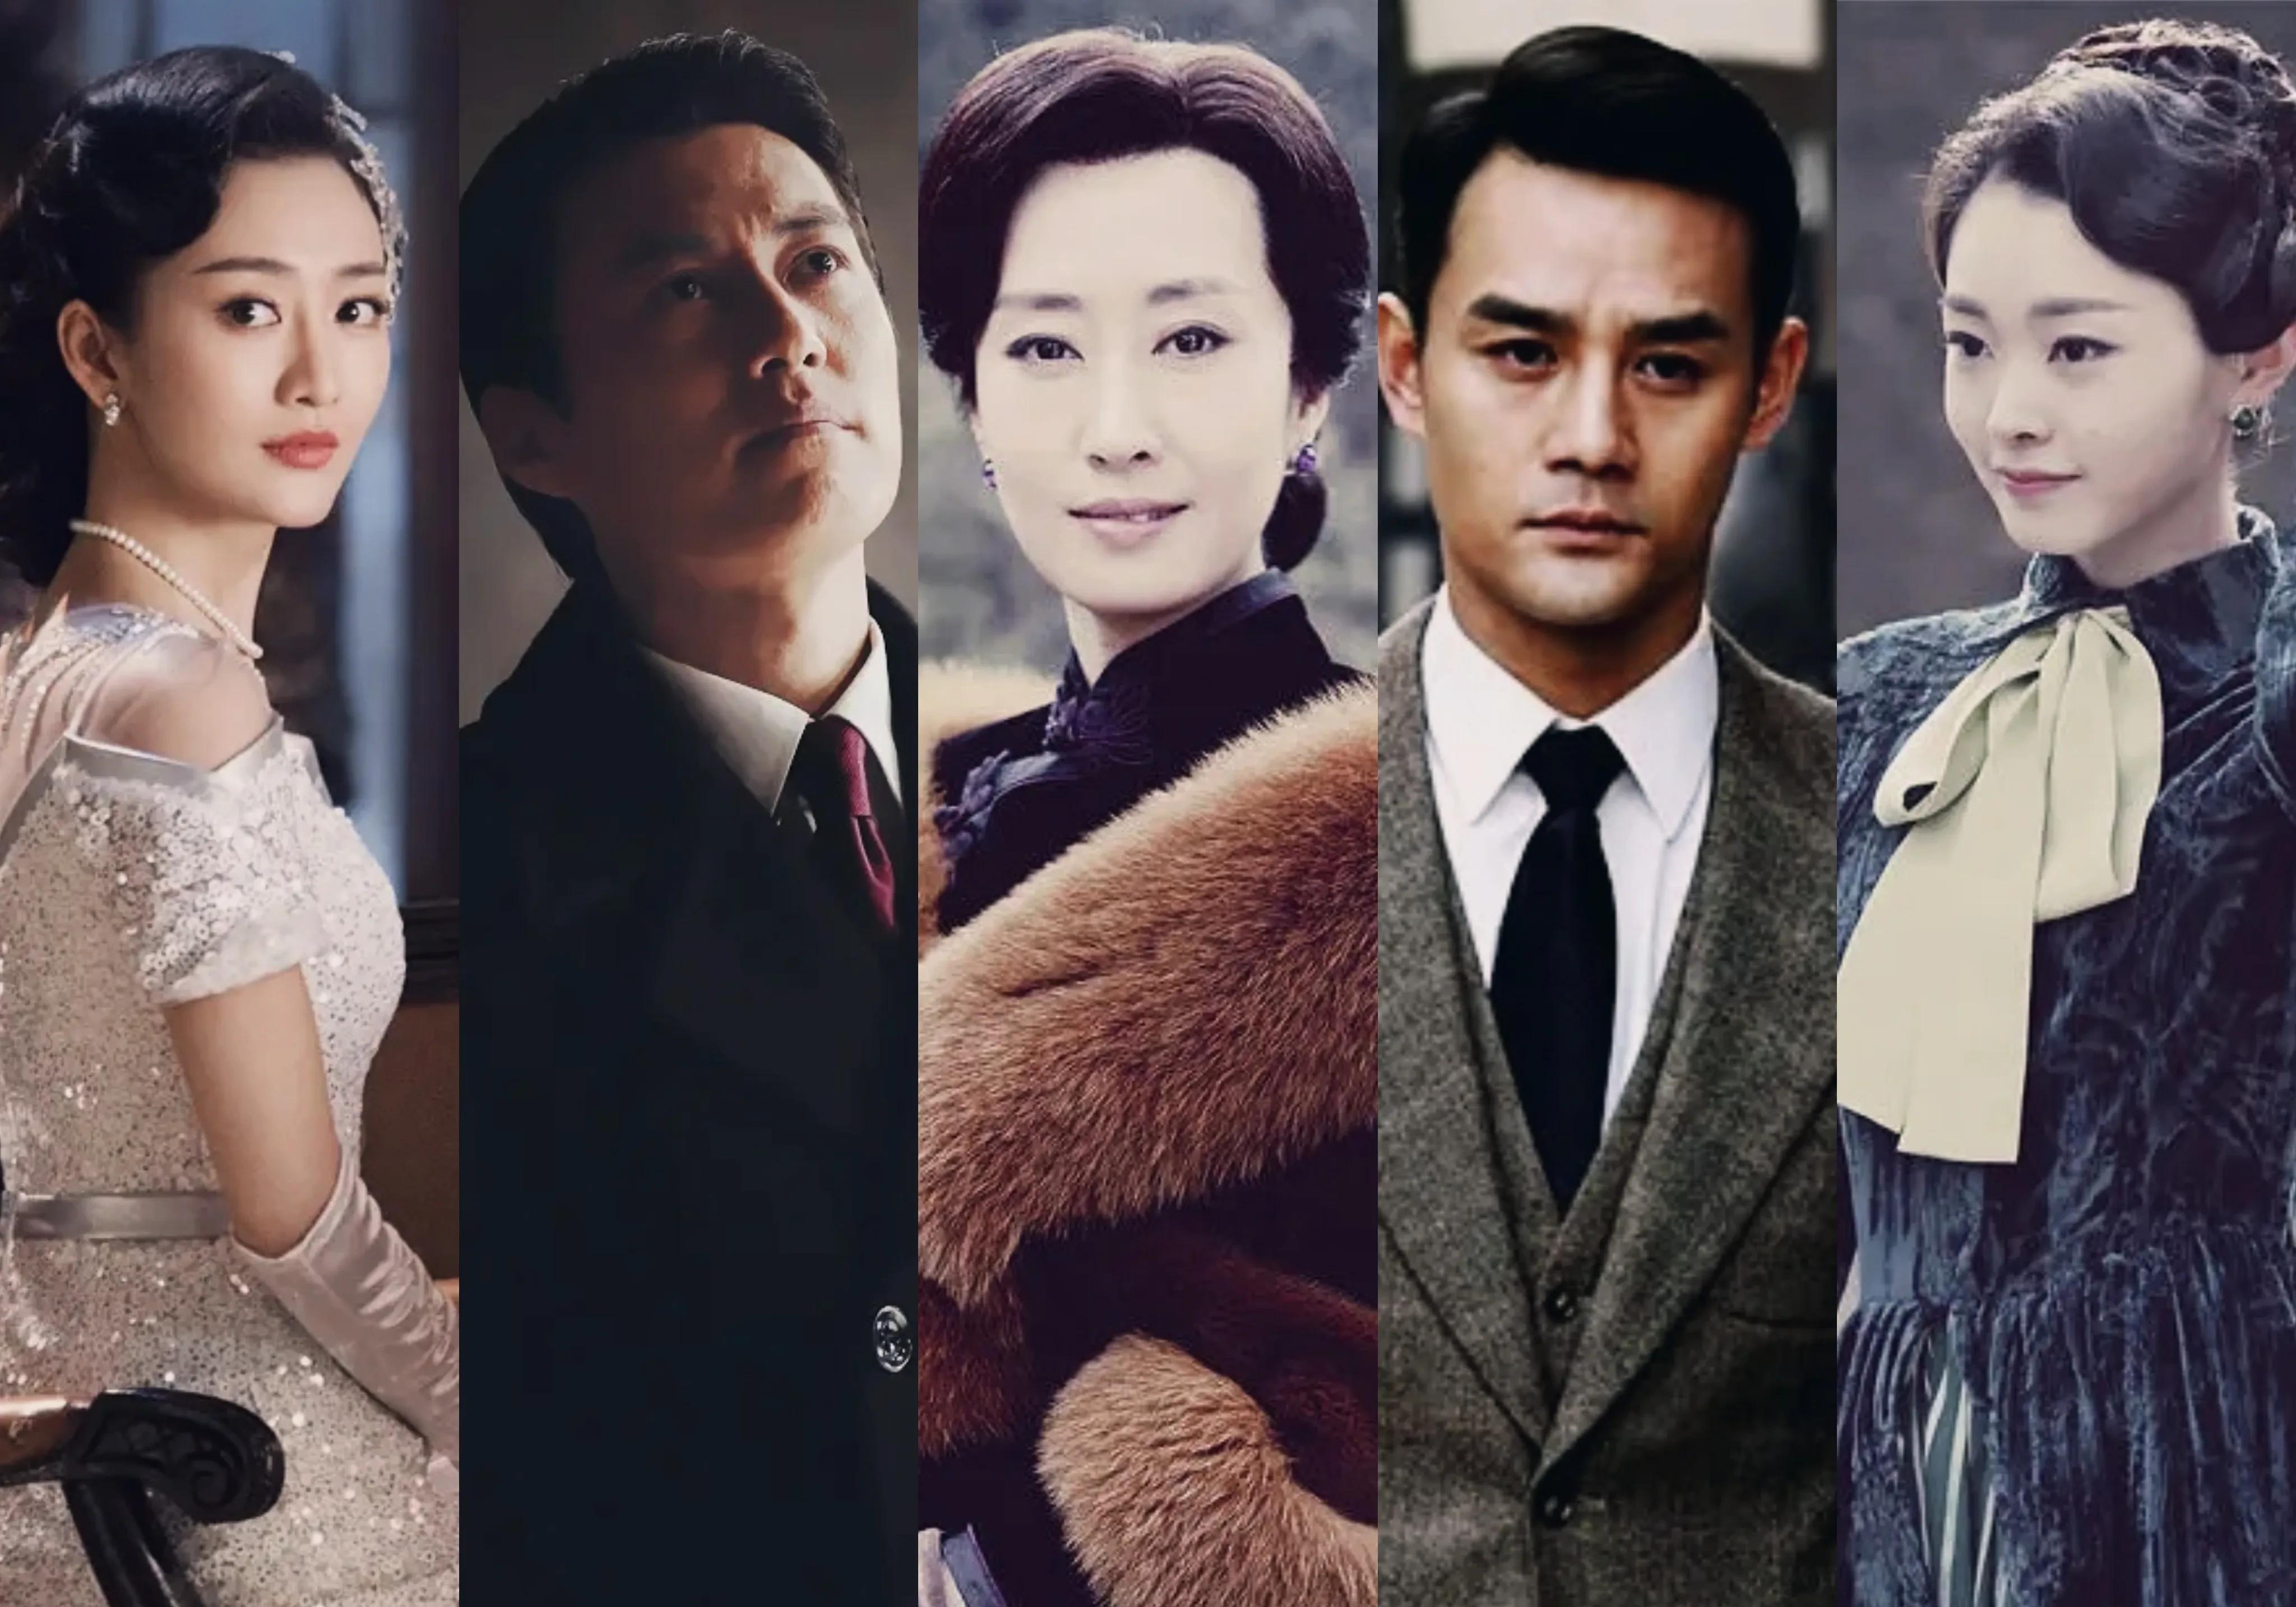 《伪装者》是经典谍战剧,一部剧捧红了一堆演员,靳东,刘敏涛,王凯